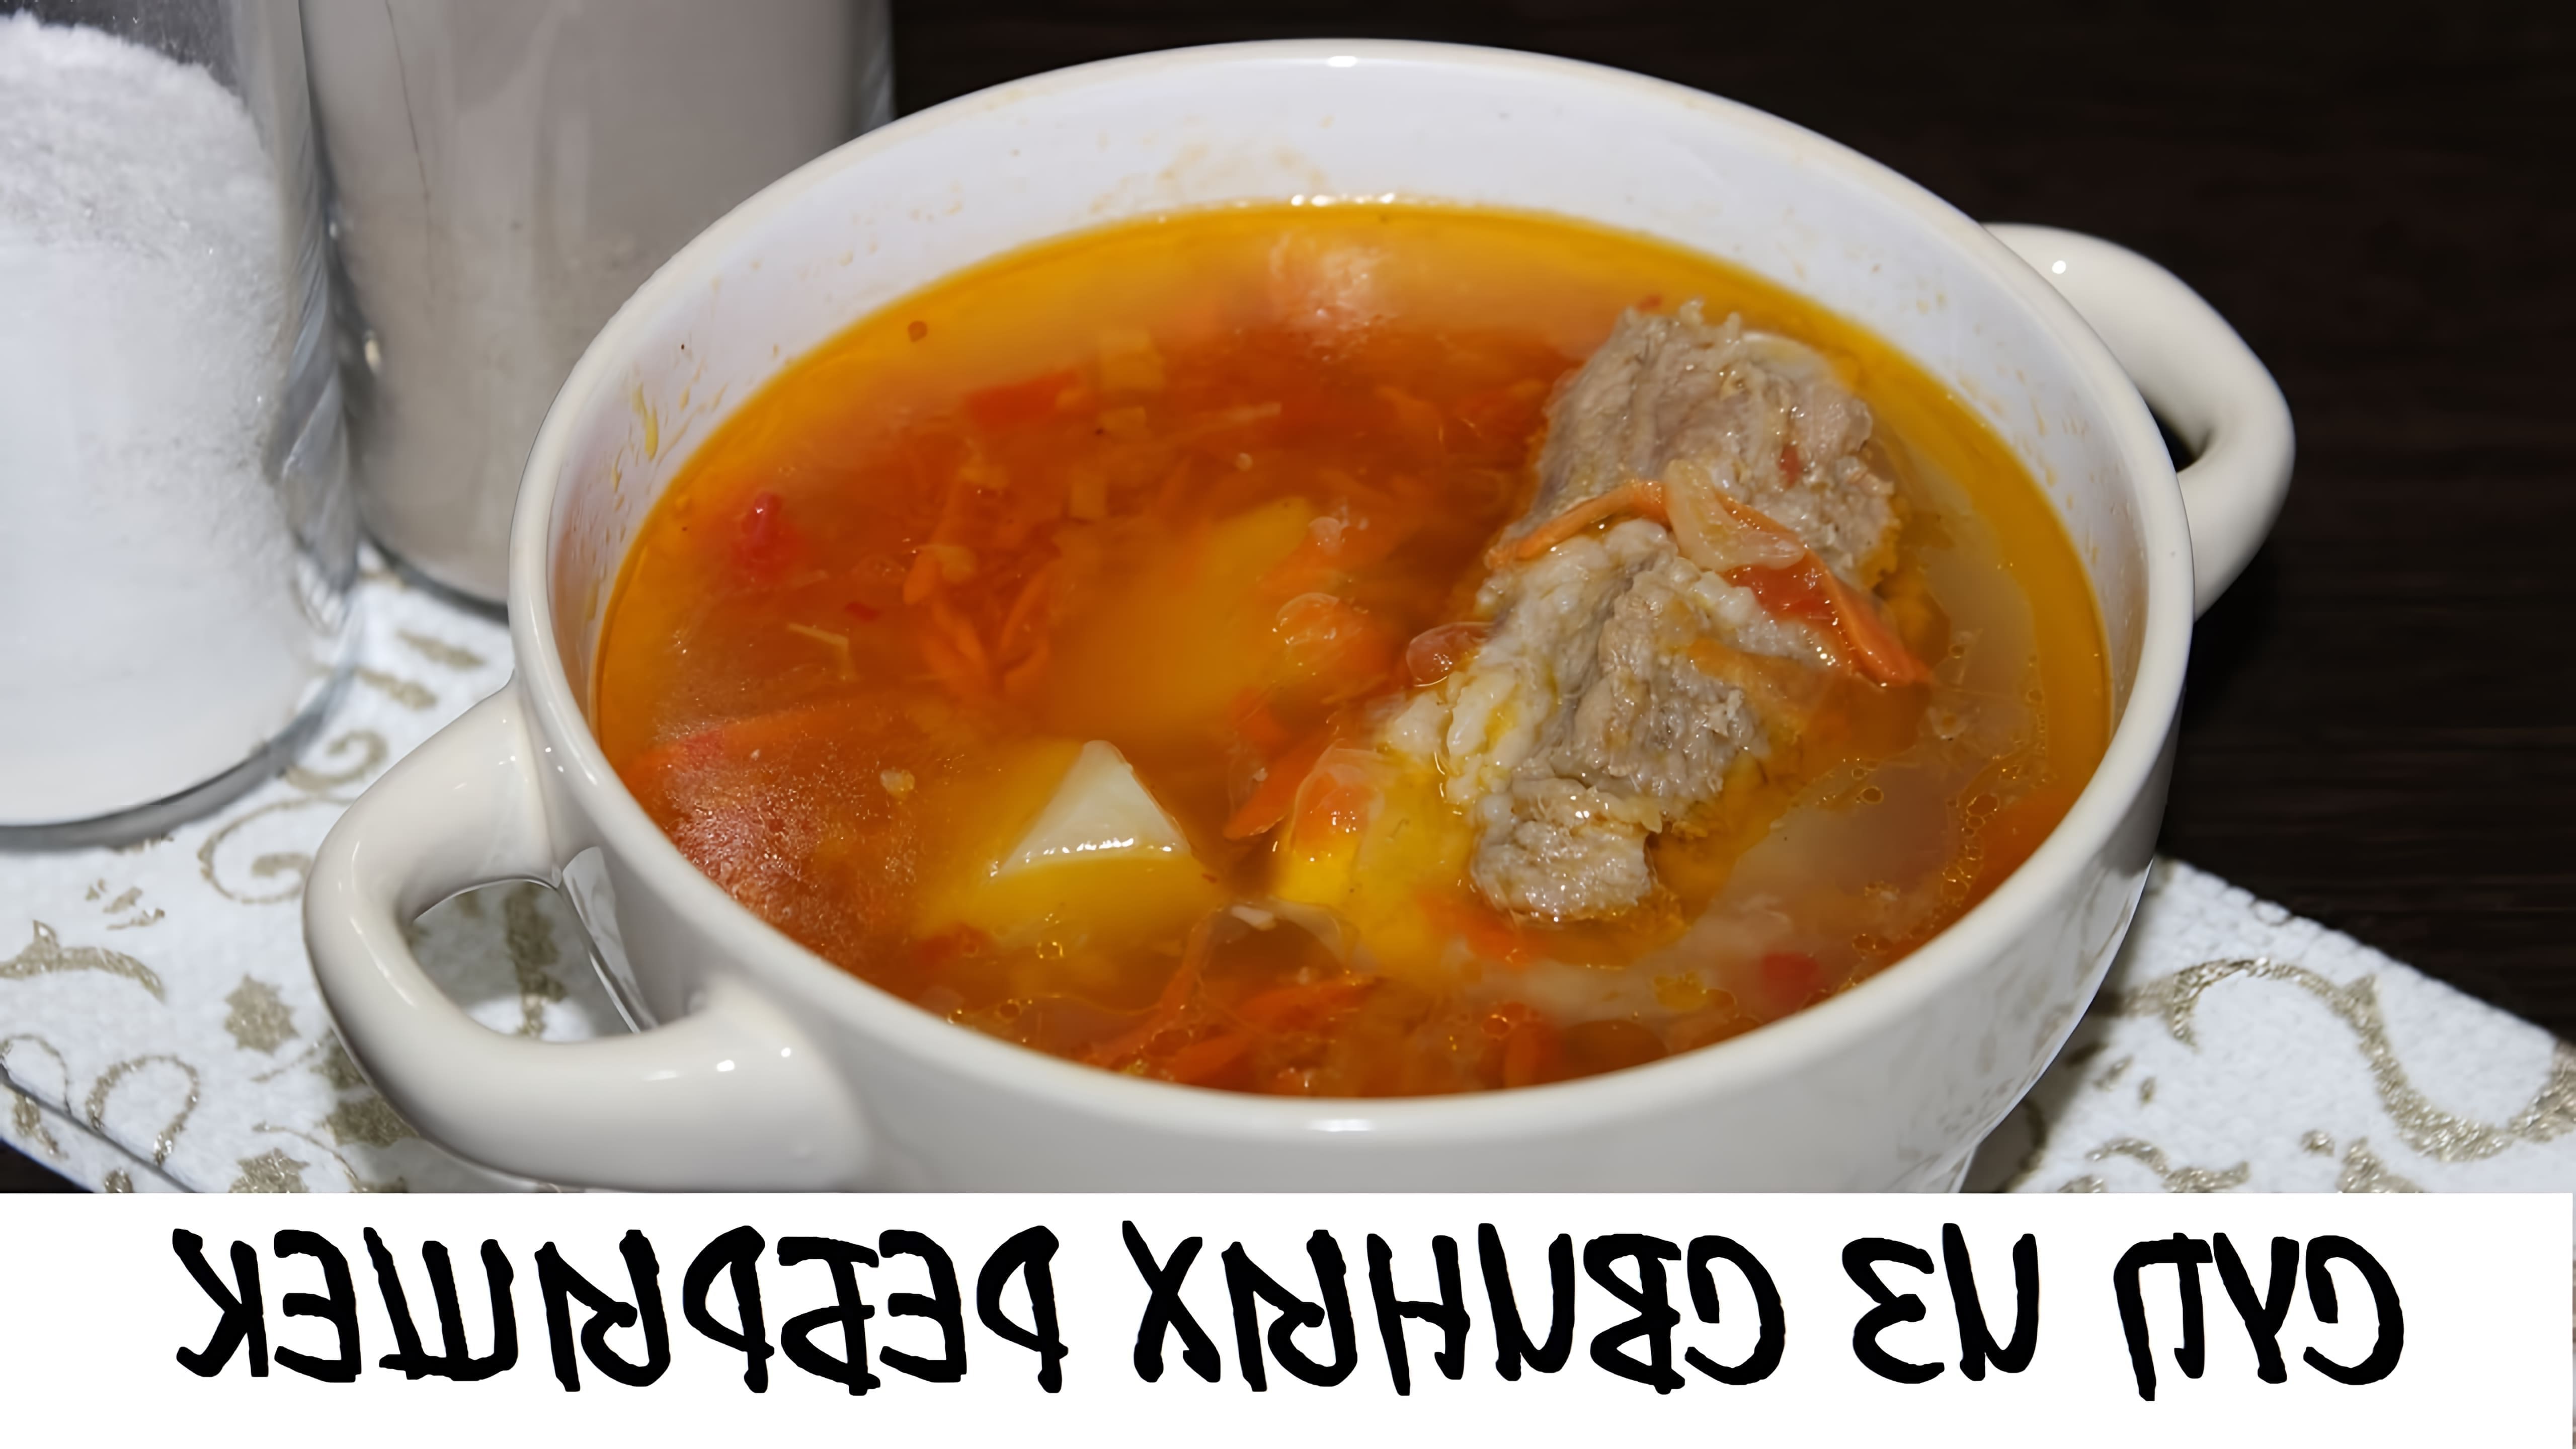 Видео рецепт супа из свиных ребер, который описывается как очень вкусный и питательный